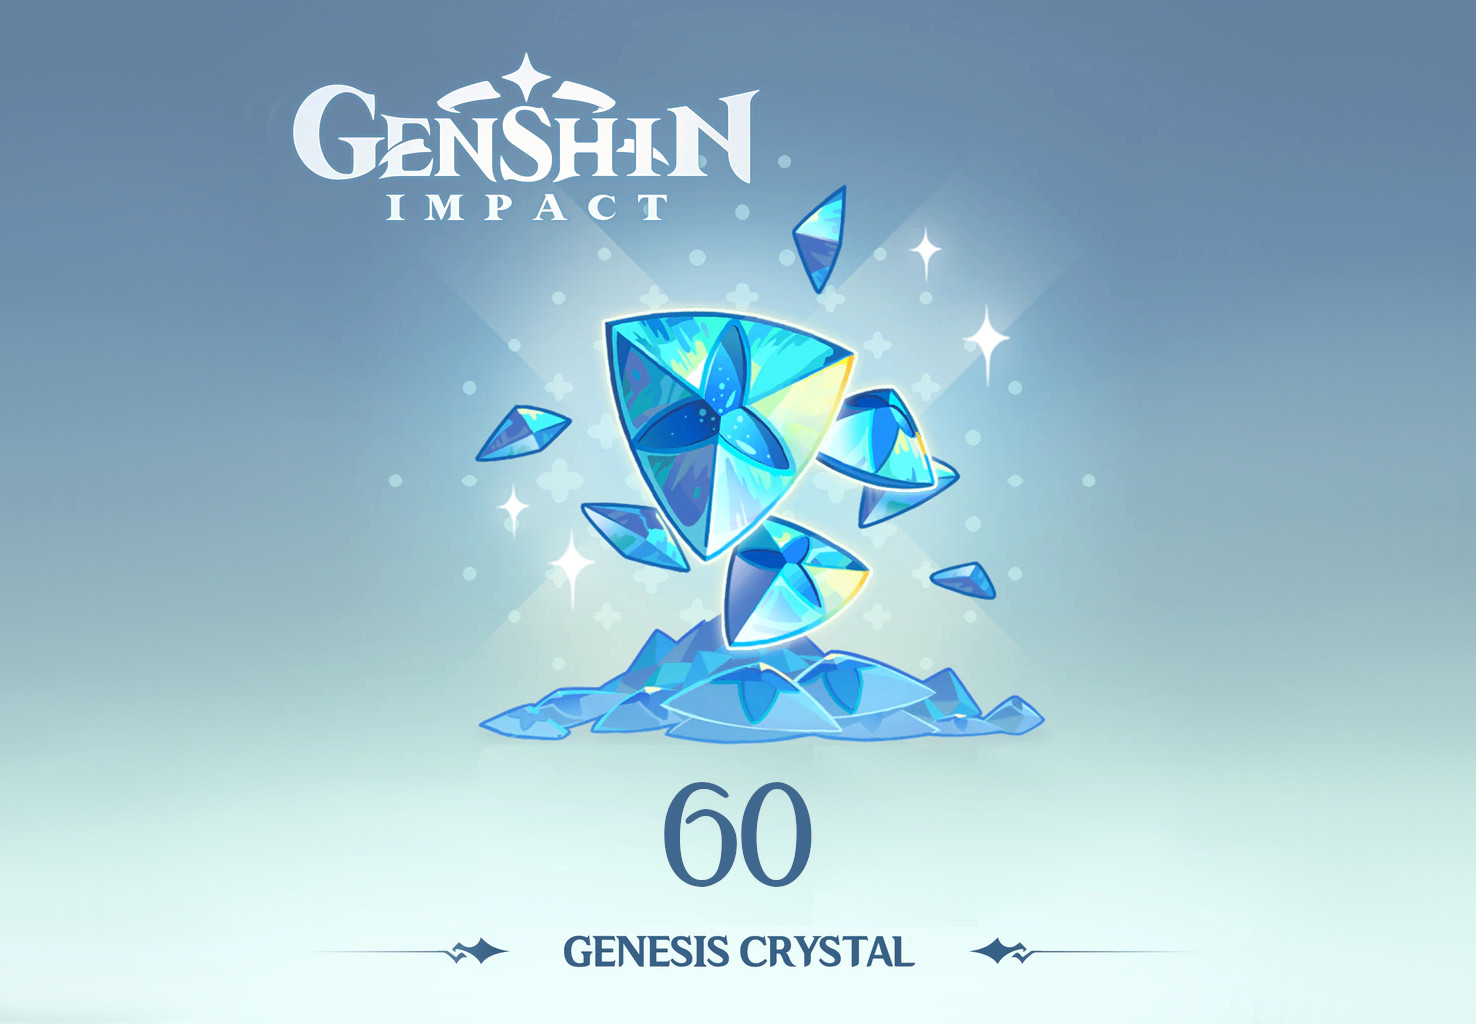 Genshin Impact - 60 Genesis Crystals Reidos Voucher [USD 1.32]